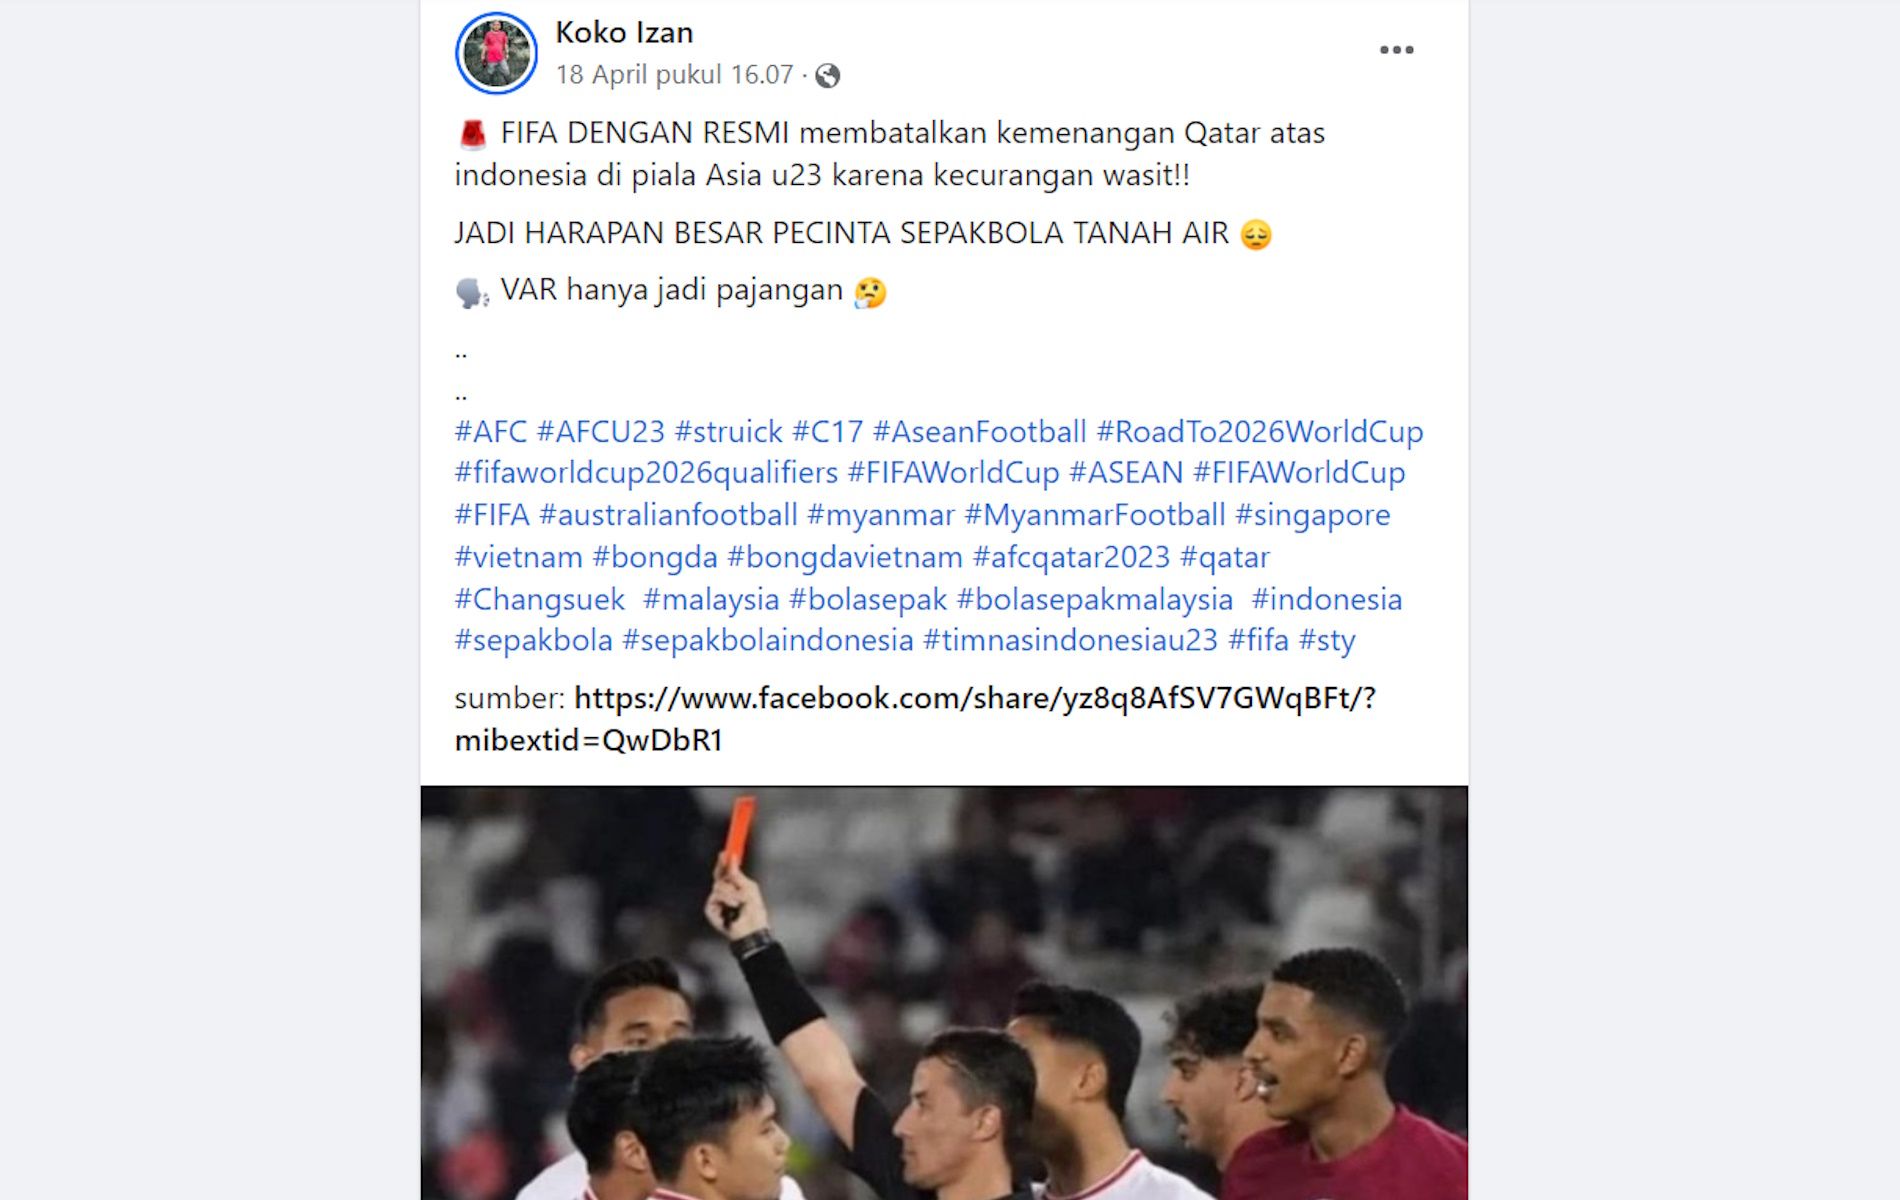 Unggahan hoaks satire yang menarasikan FIFA membatalkan kemenangan Qatar atas Indonesia karena kecurangan wasit. Faktanya, tidak ada informasi resmi mengenai informasi tersebut.